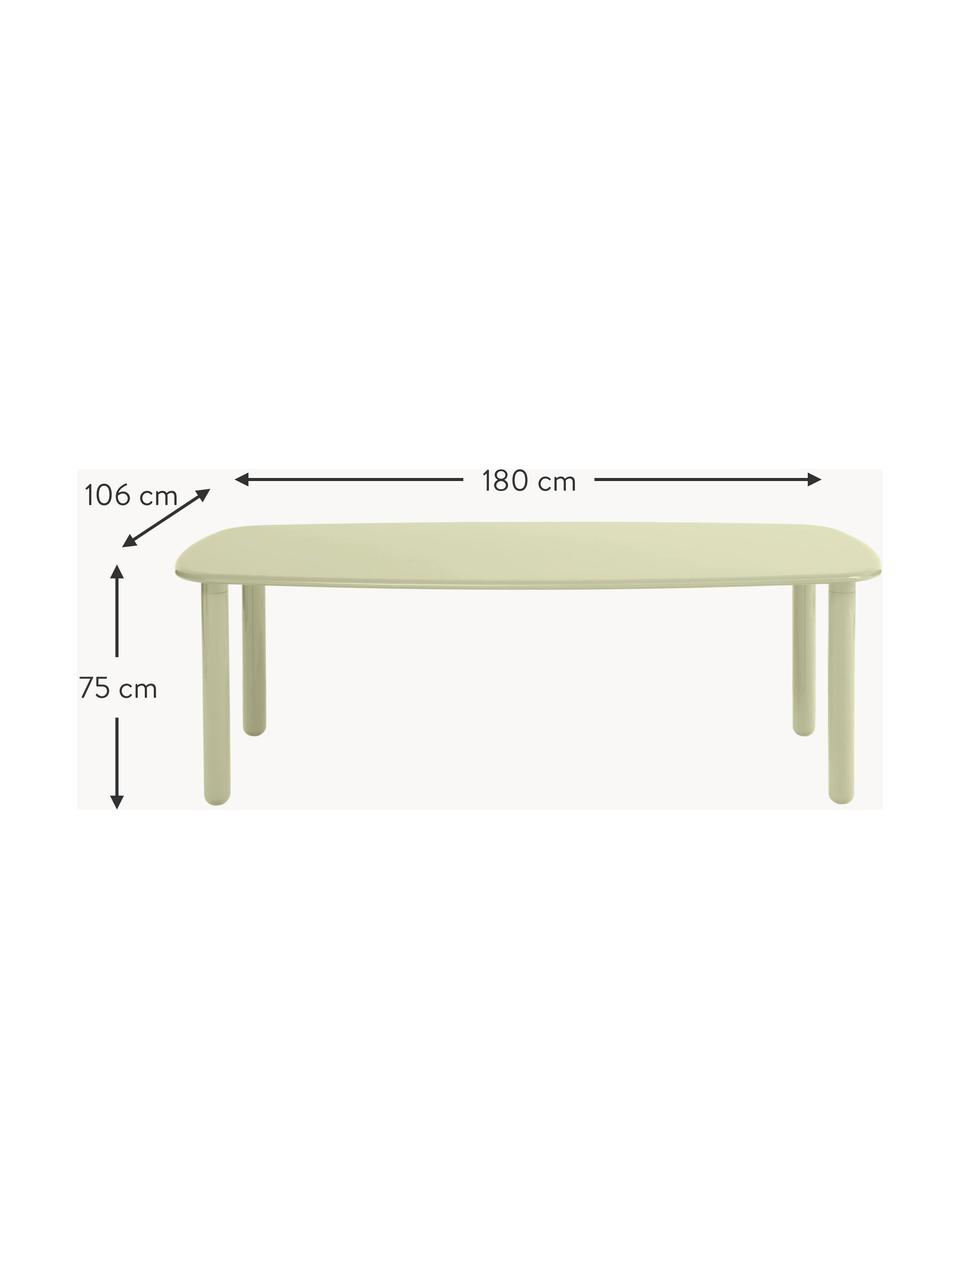 Dřevěný jídelní stůl Totton, různé velikosti, Lakovaná dřevovláknitá deska střední hustoty (MDF), Dřevo, světle zeleně lakované, Š 180 cm, H 106 cm